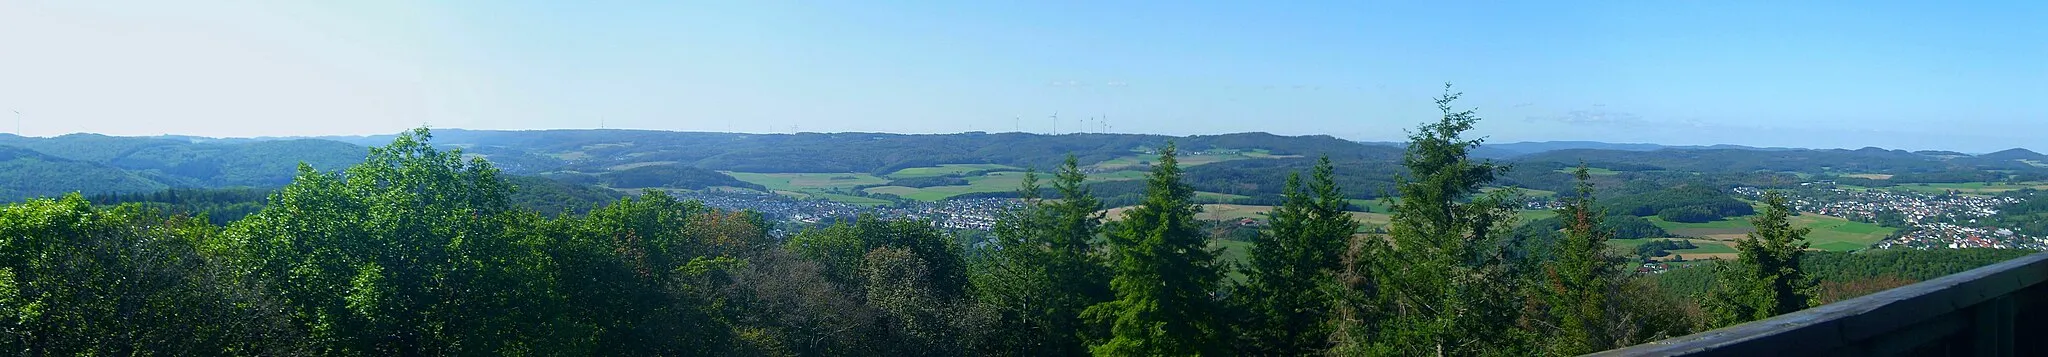 Photo showing: Blick vom Koppeturm im Höhenzug Zollbuche bei Erdhausen auf die Bottenhorner Hochflächen; rechts der Rimberg (498 m; 12 km entfernt), links davon die Kappe (494 m; 11,3 km); weiter links und eine Reihe dahinter Arennest (592 m; 19,4 km) und Sackpfeife (674 m; 23,6 km) nebst Hainpracht (631 m; 22,3 km), links davon wird der Buchholz (643 m; 25 km) von einem Weihnachtsbaum verdeckt; in der Zwischenreihe der Schwarzenberg (561 m; 17,3 km), dann die Hochflächen mit Allberg (528 m; 7 km) und Daubhaus (552 m; 6,7 km) rechts der Mitte und Angelburg (609 m; Sendeanlage) und Schmittgrund (590 m; unmittelbar rechts des Buchenzweigs) links der Mitte; im linken Hintergrund der westlichere Teil der Zollbuche. Zwischen Zollbuche und Hochflächen das Salzbödetal mit Bad Endbach, Wommelshausen (rechts davon und etwas höher), Weidenhausen (Mitte des Bildes), rechts oberhalb dann Römershausen und Rachelshausen (links vor dem Daubhaus); ganz rechts Gladenbach, links davon und durch den Lammerich (357 m) separiert, Kehlnbach. Siehe Udeuschle